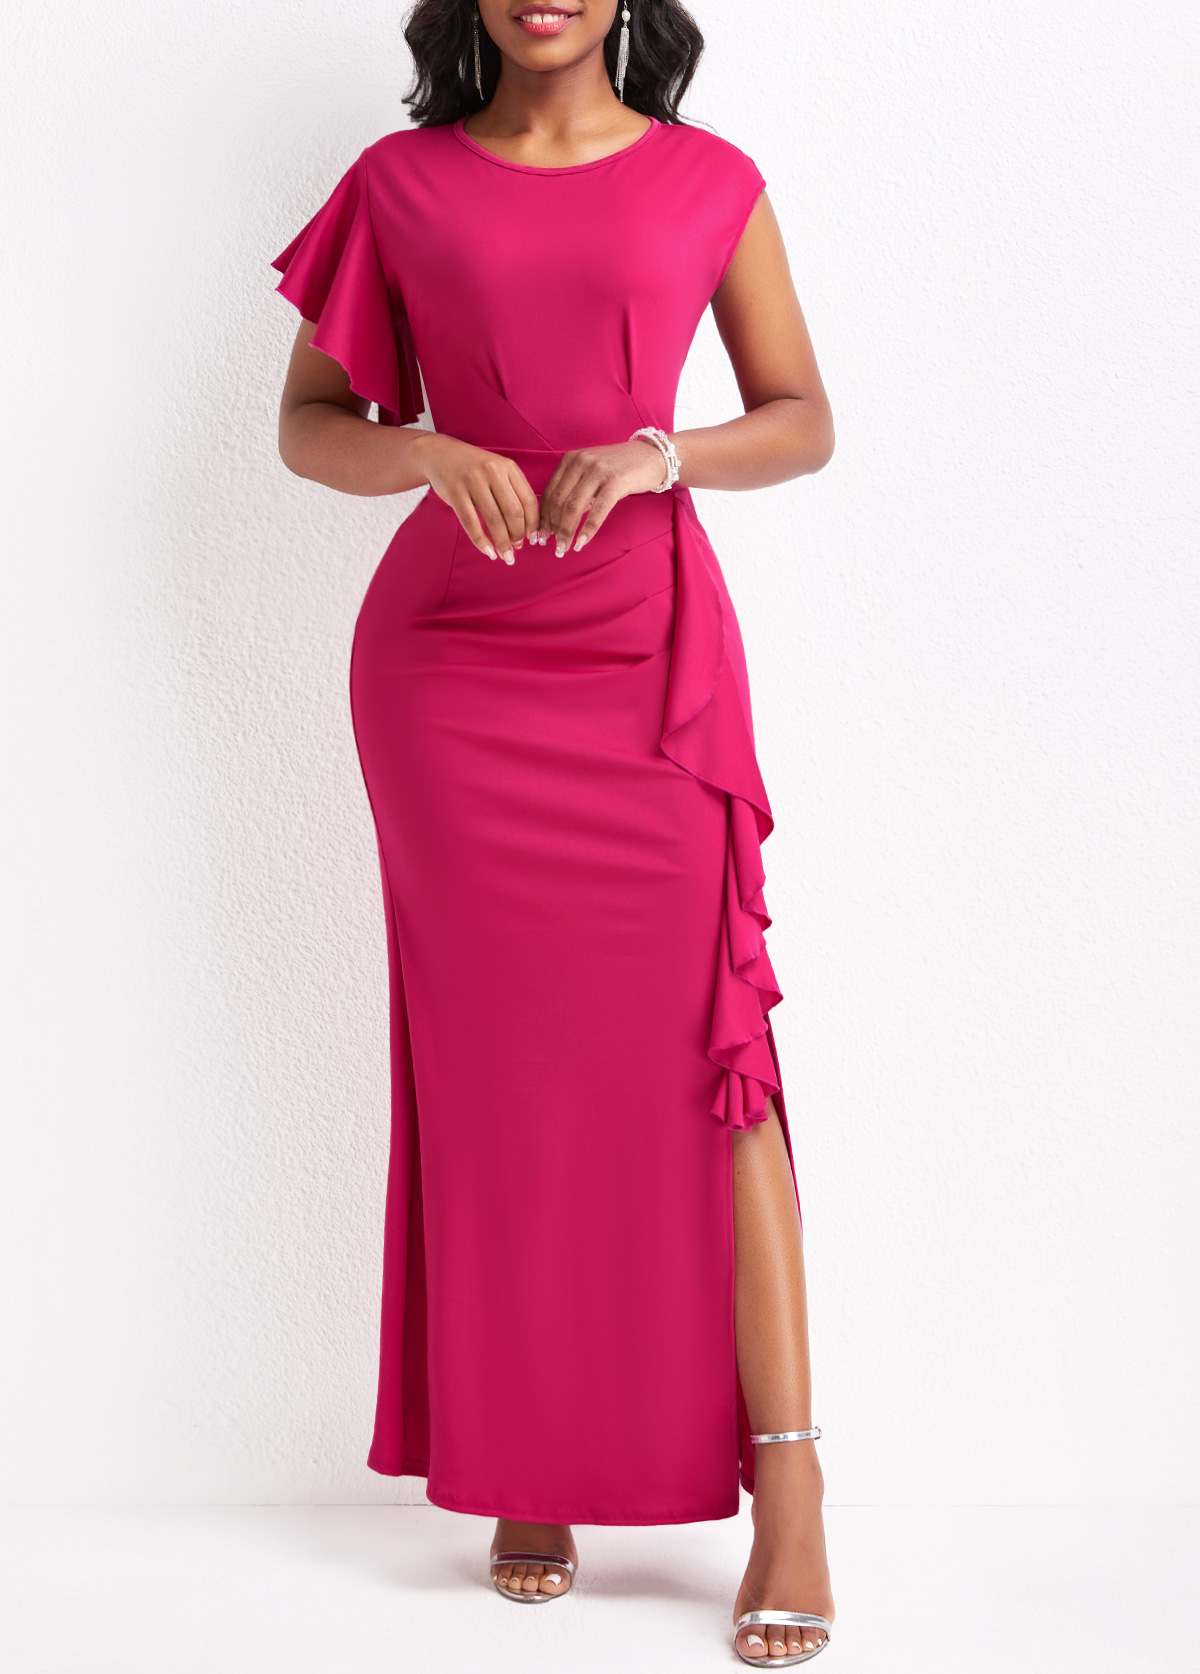 Hot Pink Ruffle Short Sleeve Dress